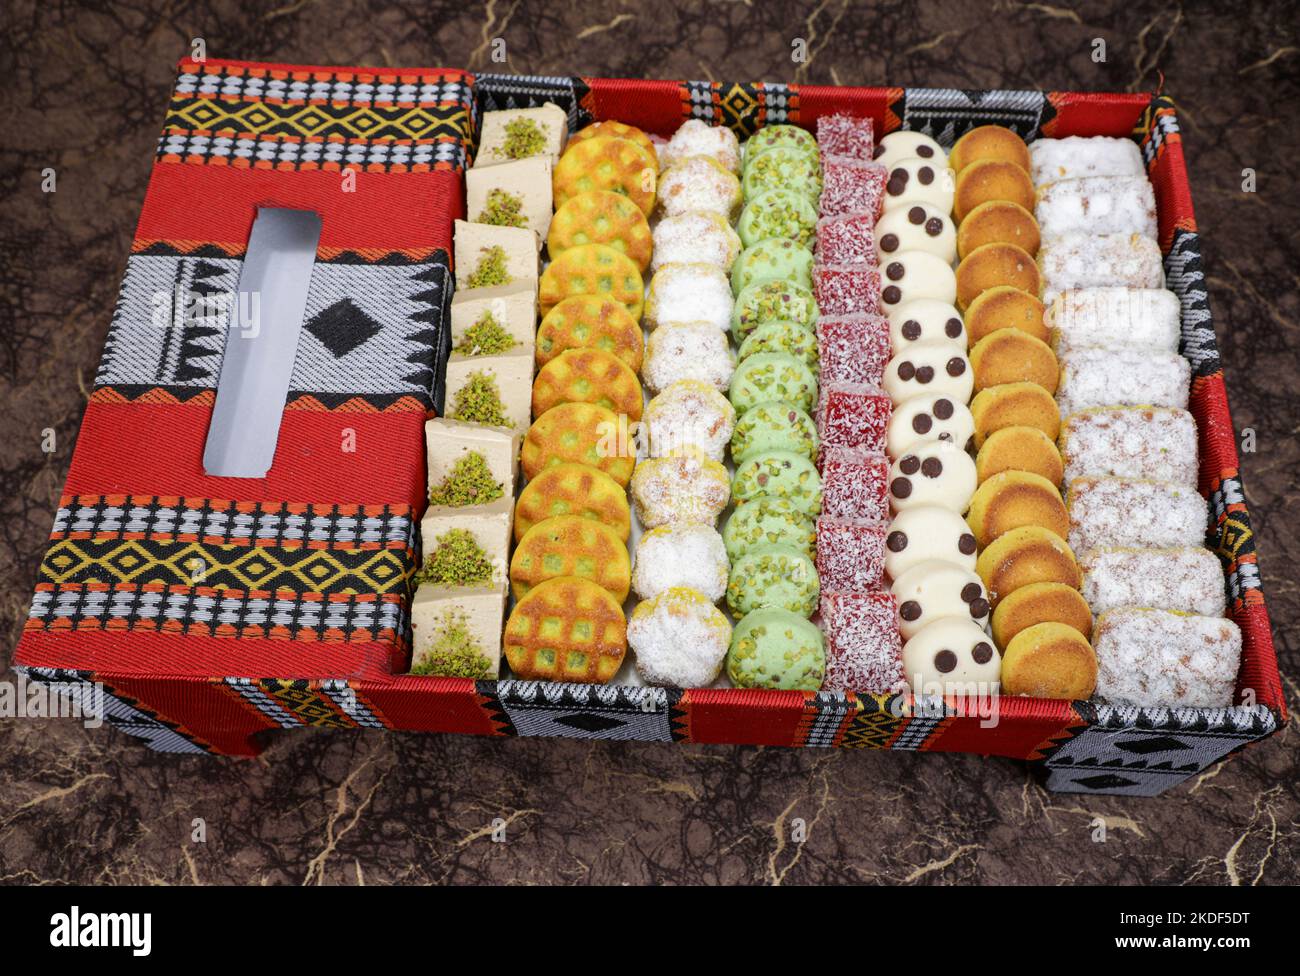 Panier cadeau de biscuits de boulangerie arabe Banque D'Images